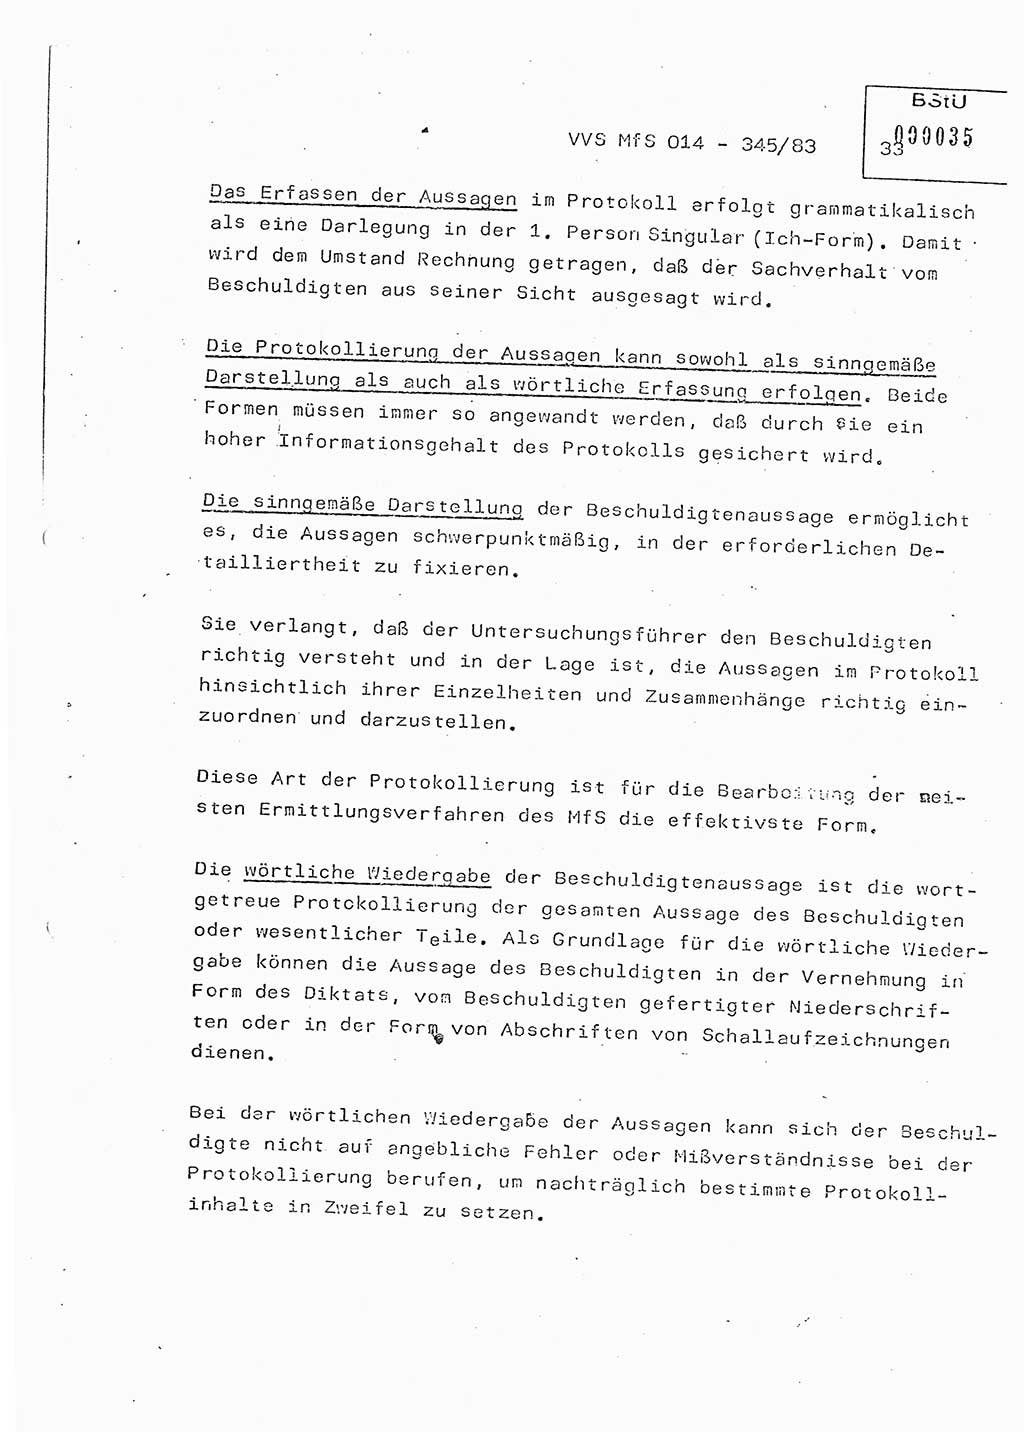 Lektion Ministerium für Staatssicherheit (MfS) [Deutsche Demokratische Republik (DDR)], Hauptabteilung (HA) Ⅸ, Vertrauliche Verschlußsache (VVS) o014-345/83, Berlin 1983, Seite 33 (Lekt. MfS DDR HA Ⅸ VVS o014-345/83 1983, S. 33)